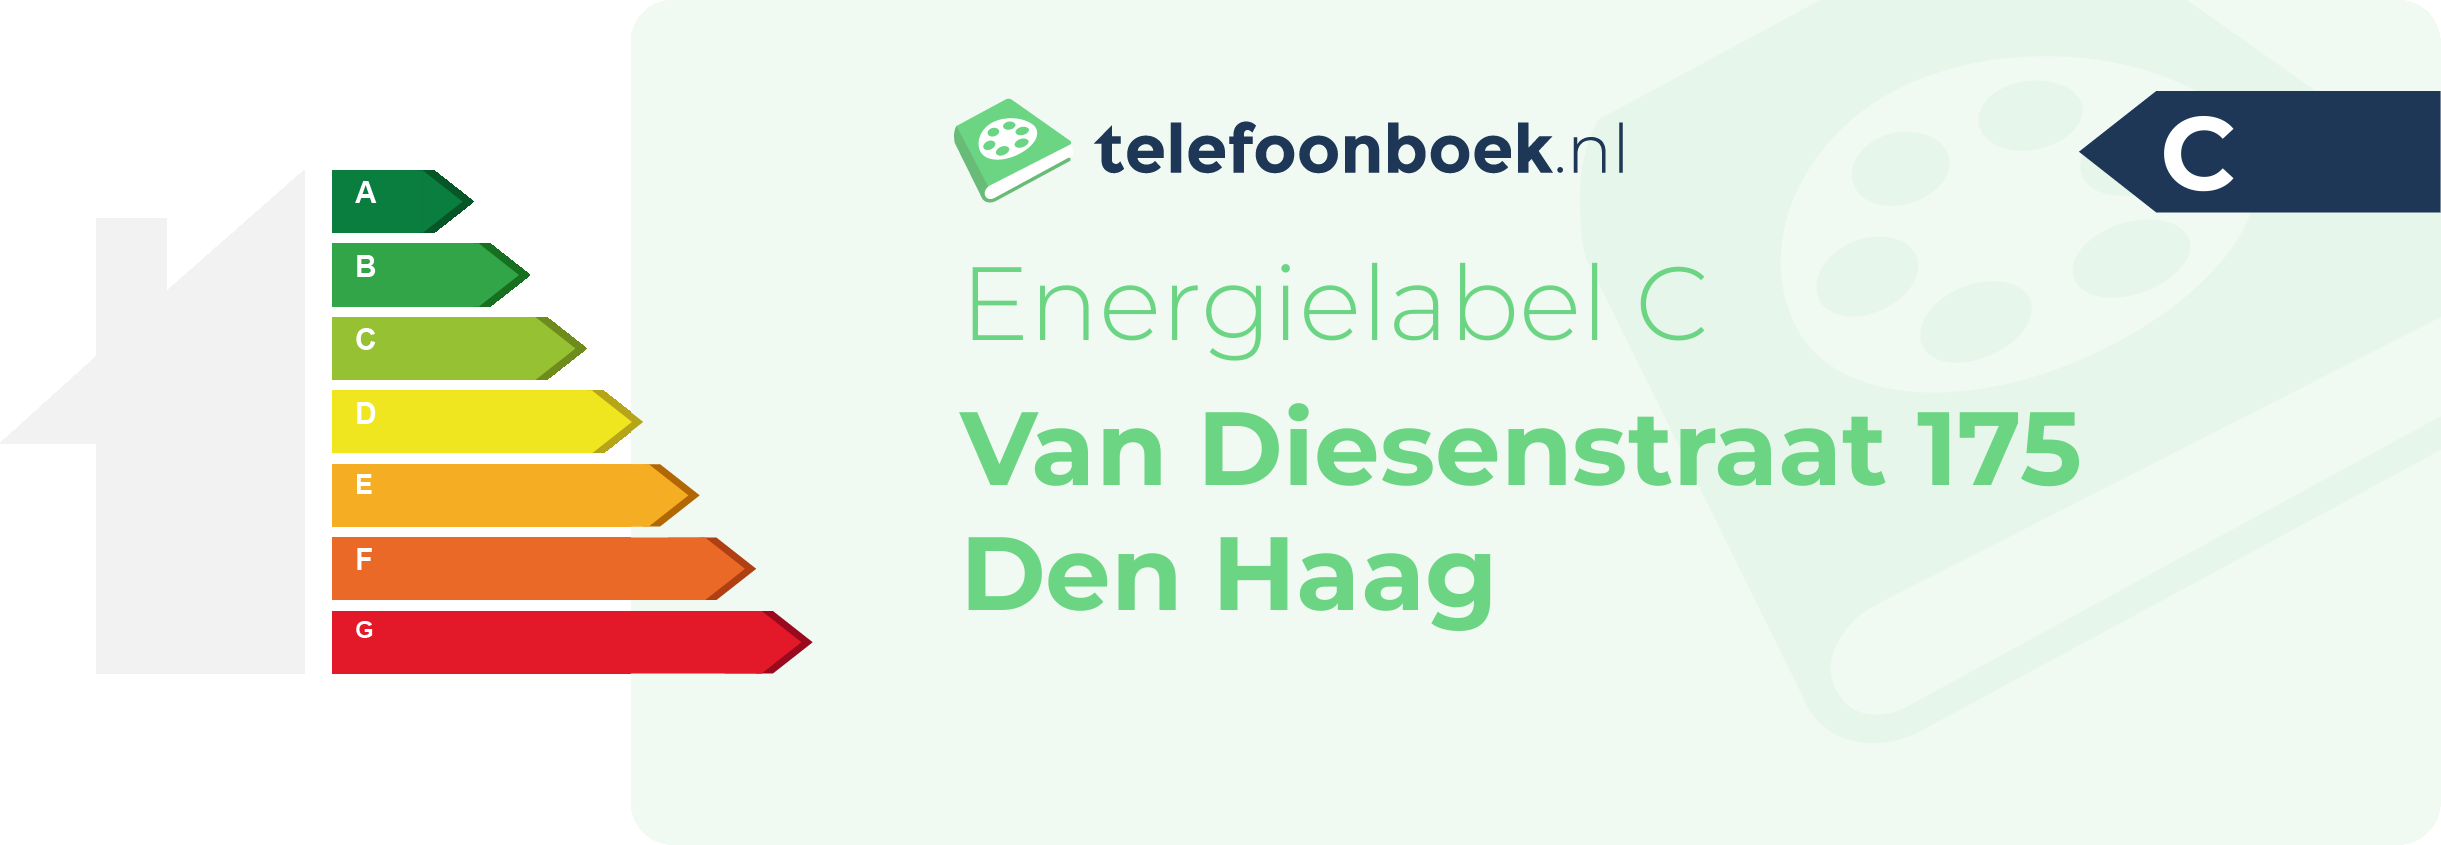 Energielabel Van Diesenstraat 175 Den Haag